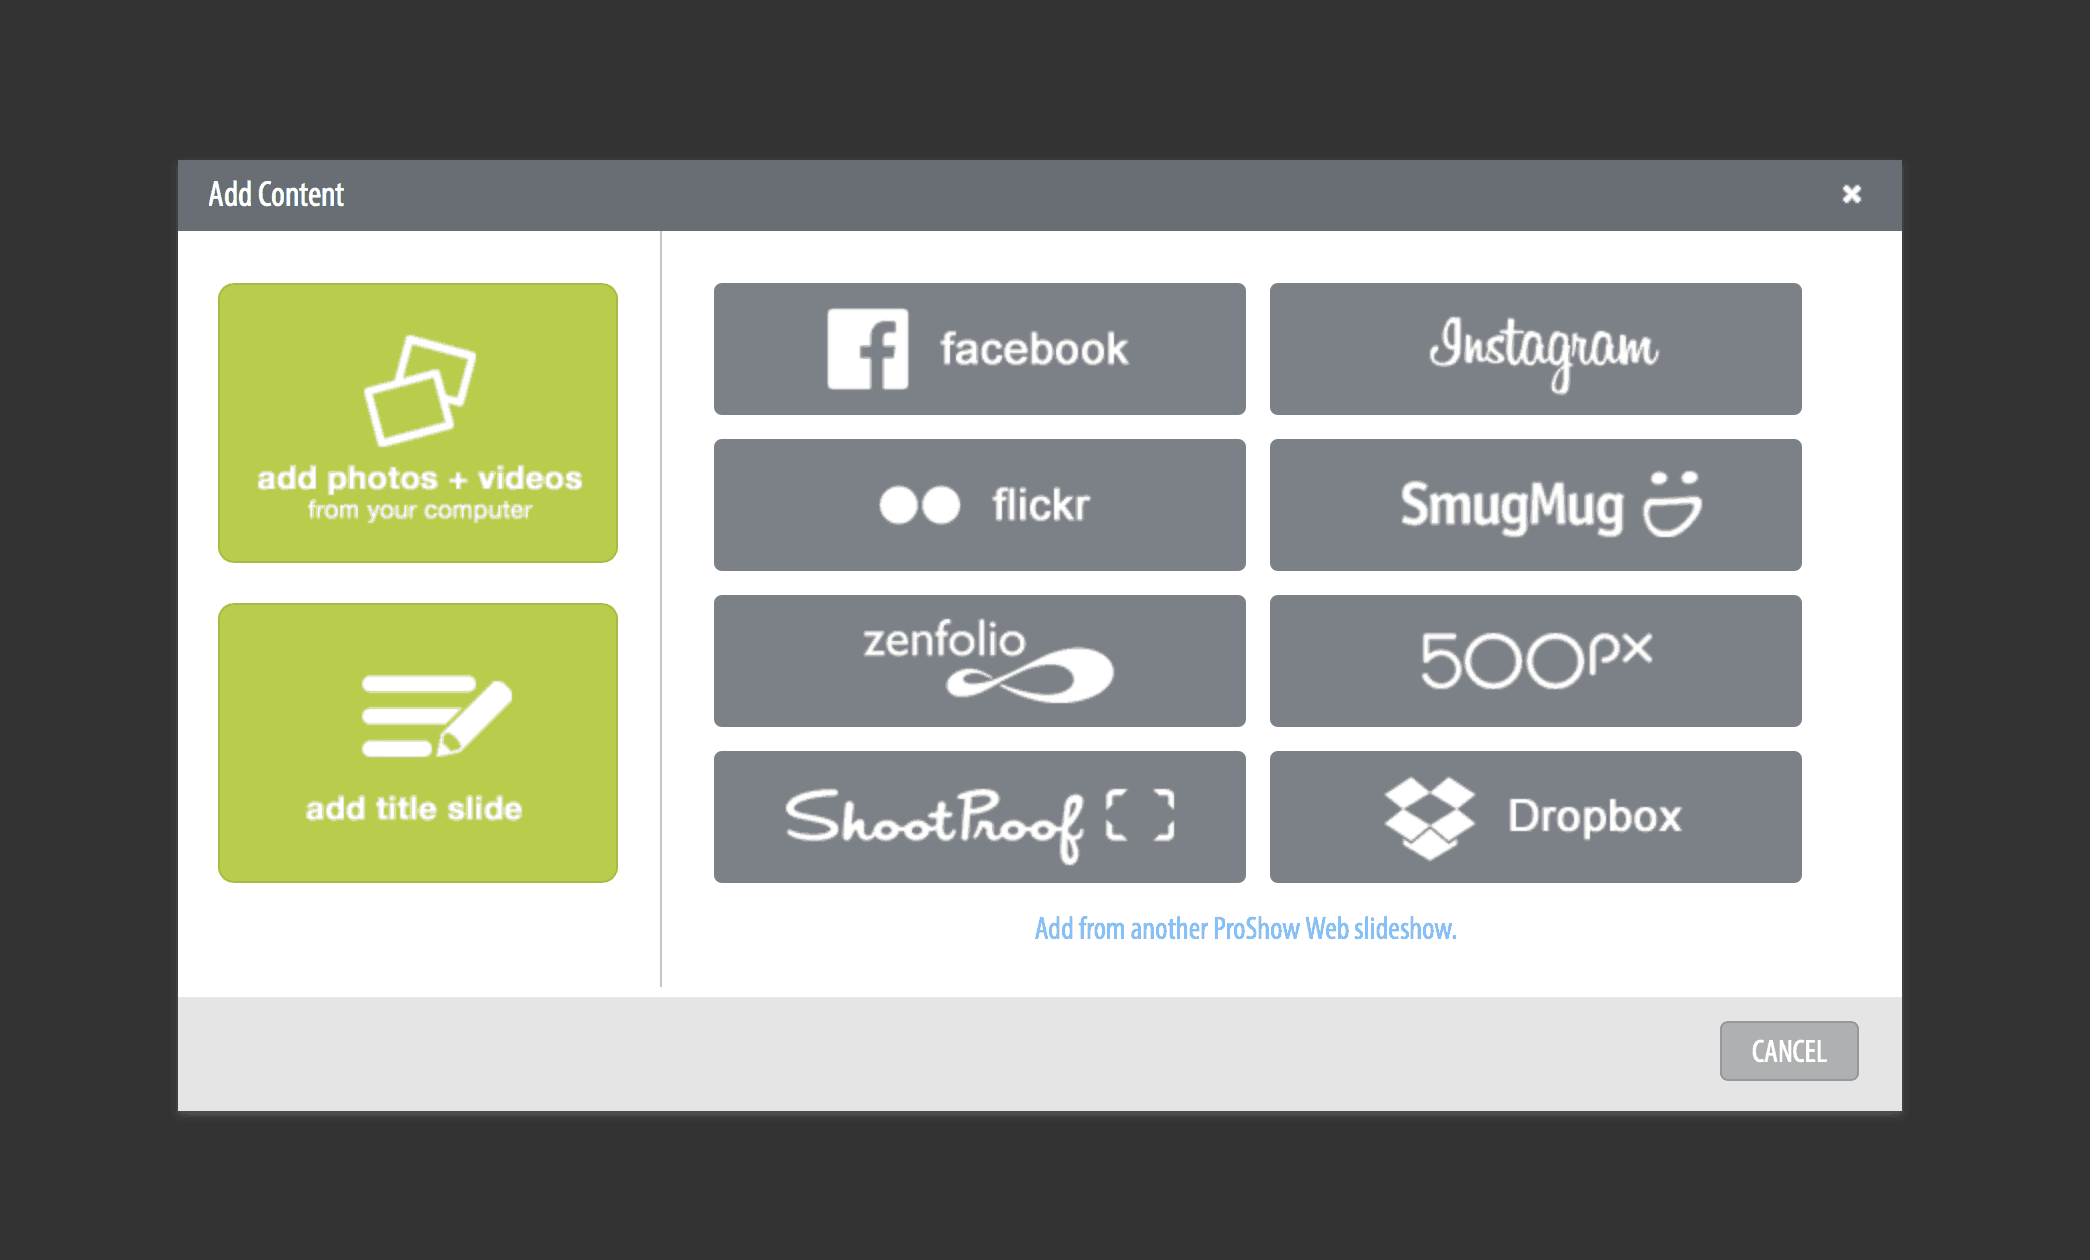 een diavoorstelling voor foto 's en Video' s maken zoals een Pro met ProShow Web | OrganizingPhotos.net Instagram, Zenfolio en Dropbox u kunt inhoud toevoegen uit verschillende bronnen, waaronder Facebook, Flickr, Instagram, Zenfolio en Dropbox.